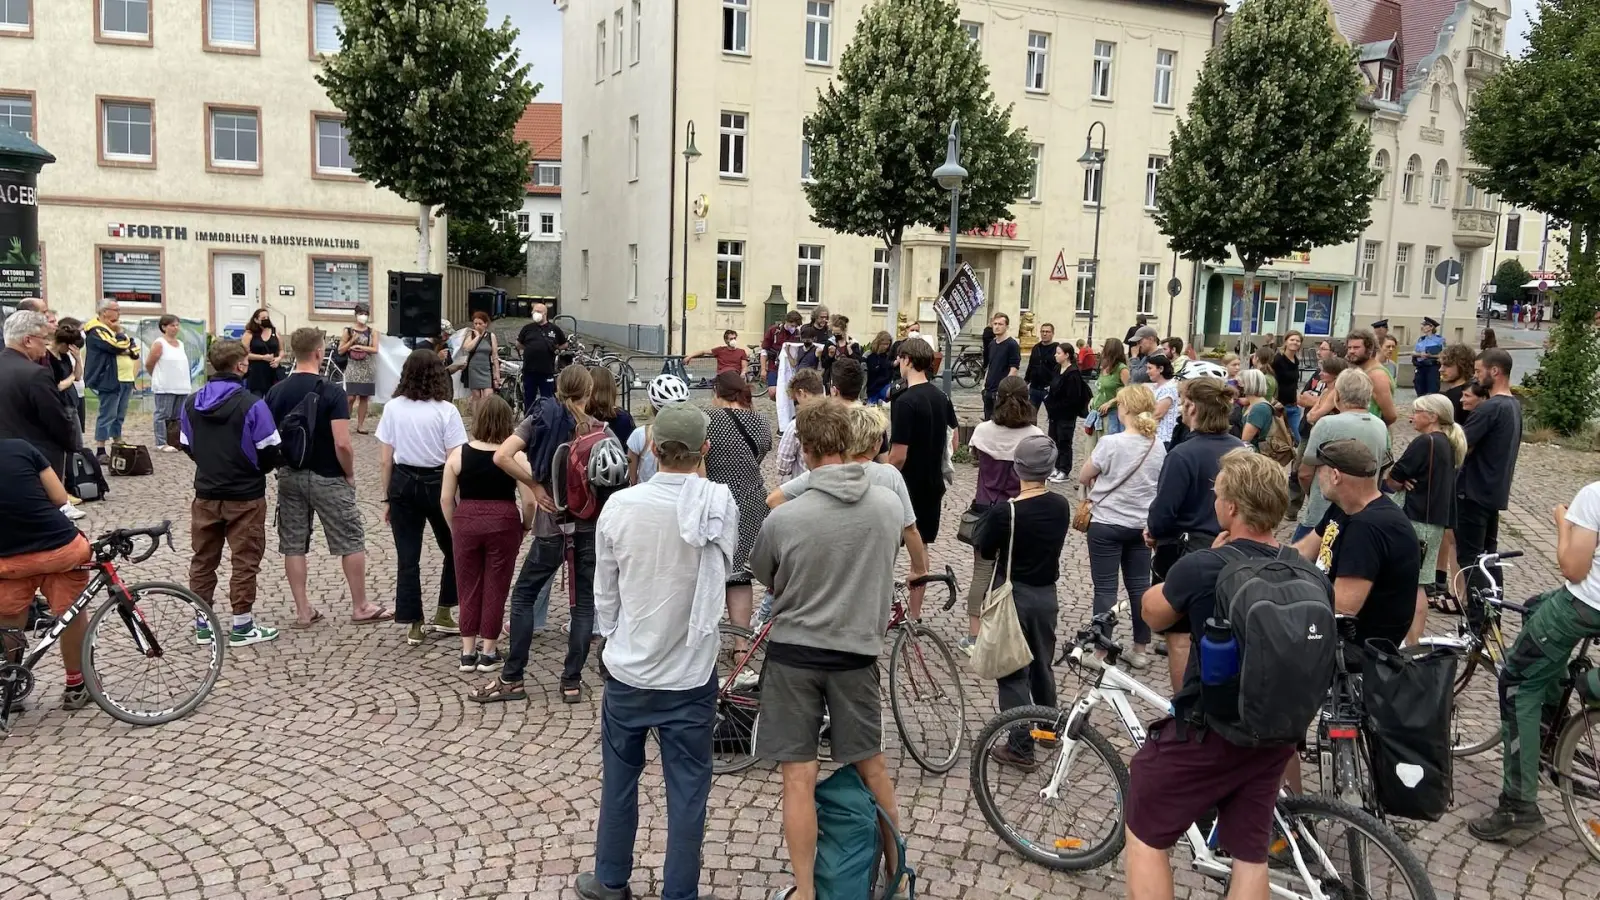 Am Mittwoch kamen auf dem Markt rund 70 Menschen für eine Kundgebung gegen rechte Gewalt zusammen. (Foto: taucha-kompakt.de)